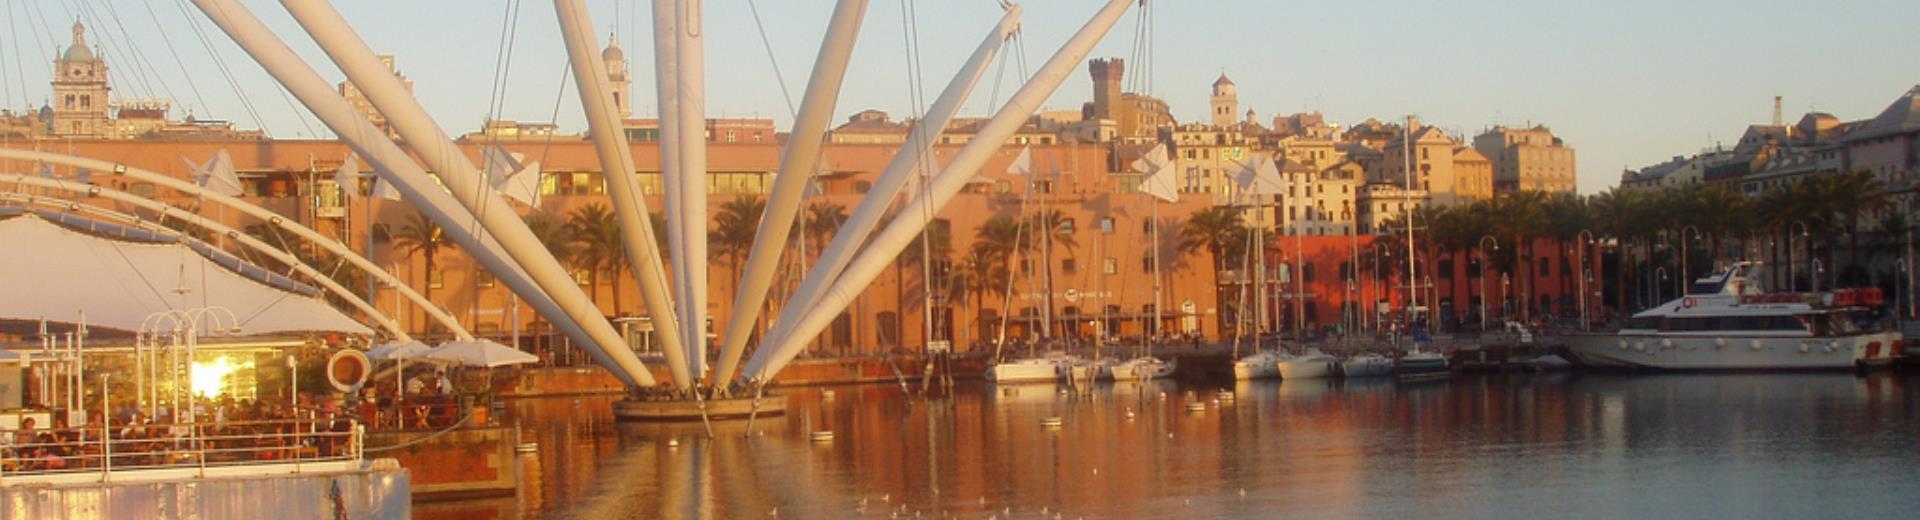 Scopri gli eventi che si tengono a Genova al Porto Antico ed al Centro congressi Magazzini del cotone. L'hotel Porto Antico di Genova dista solo 50 metri dal Porto Antico.